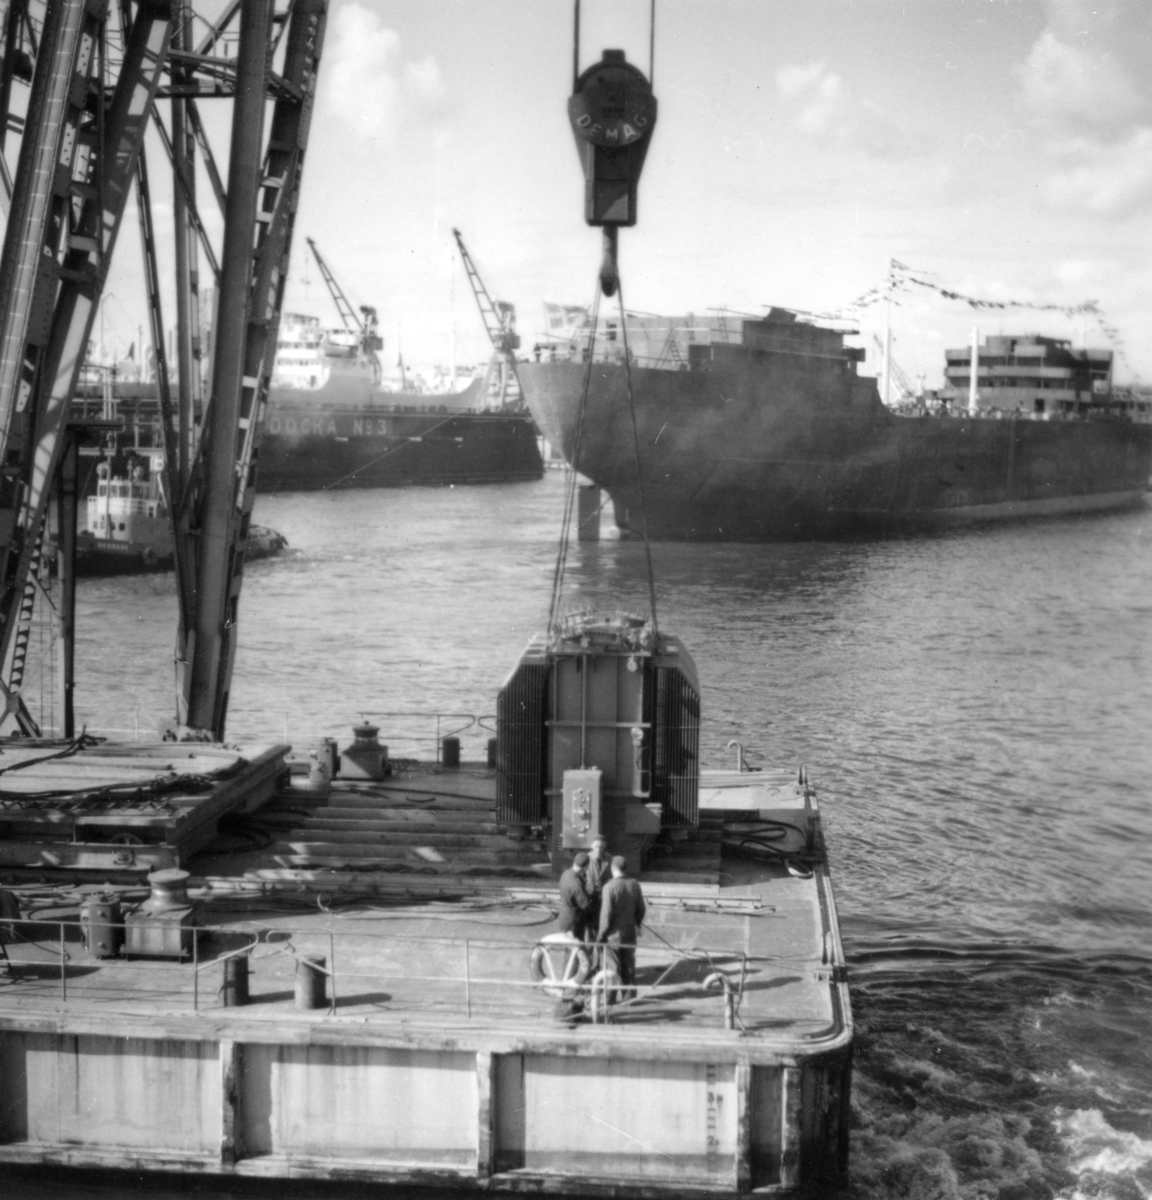 Transport av transformator 50 kW på Göteborgs hamn, 17/6-1955. Arbetspråmen är CHAPMAN som ägdes av Göteborgs hamn. Några män är med på bilden. Bogserbåten i bakgrunden är Röda Bolagets isbrytande bogser- och bärgnings(ång)båt HERBERT byggd på Eriksberg 1944.  Den sjösatta tankern är M/T FERNCOURT och sjösättningen skedde16/6 enligt upggifter från Eriksbergs varvs arkiv och det sjösatta skrovet är under bogsering till en av utrustnings/reparations pirerna som ägdes av Eriksbergsvarvet.  M/T Ferncourt var en 17 3/4 knops 9000 tonnare med en tonnagedödvikt (twd) på 24 400.
Beställare var Olsoredeiet Fearnley & Eger och levernasen skedde 7/9-1955. Den var den första av fyra fartyg som leverades i följd till samma rederi.  Bilden är tagen från Majnabbehamnen.